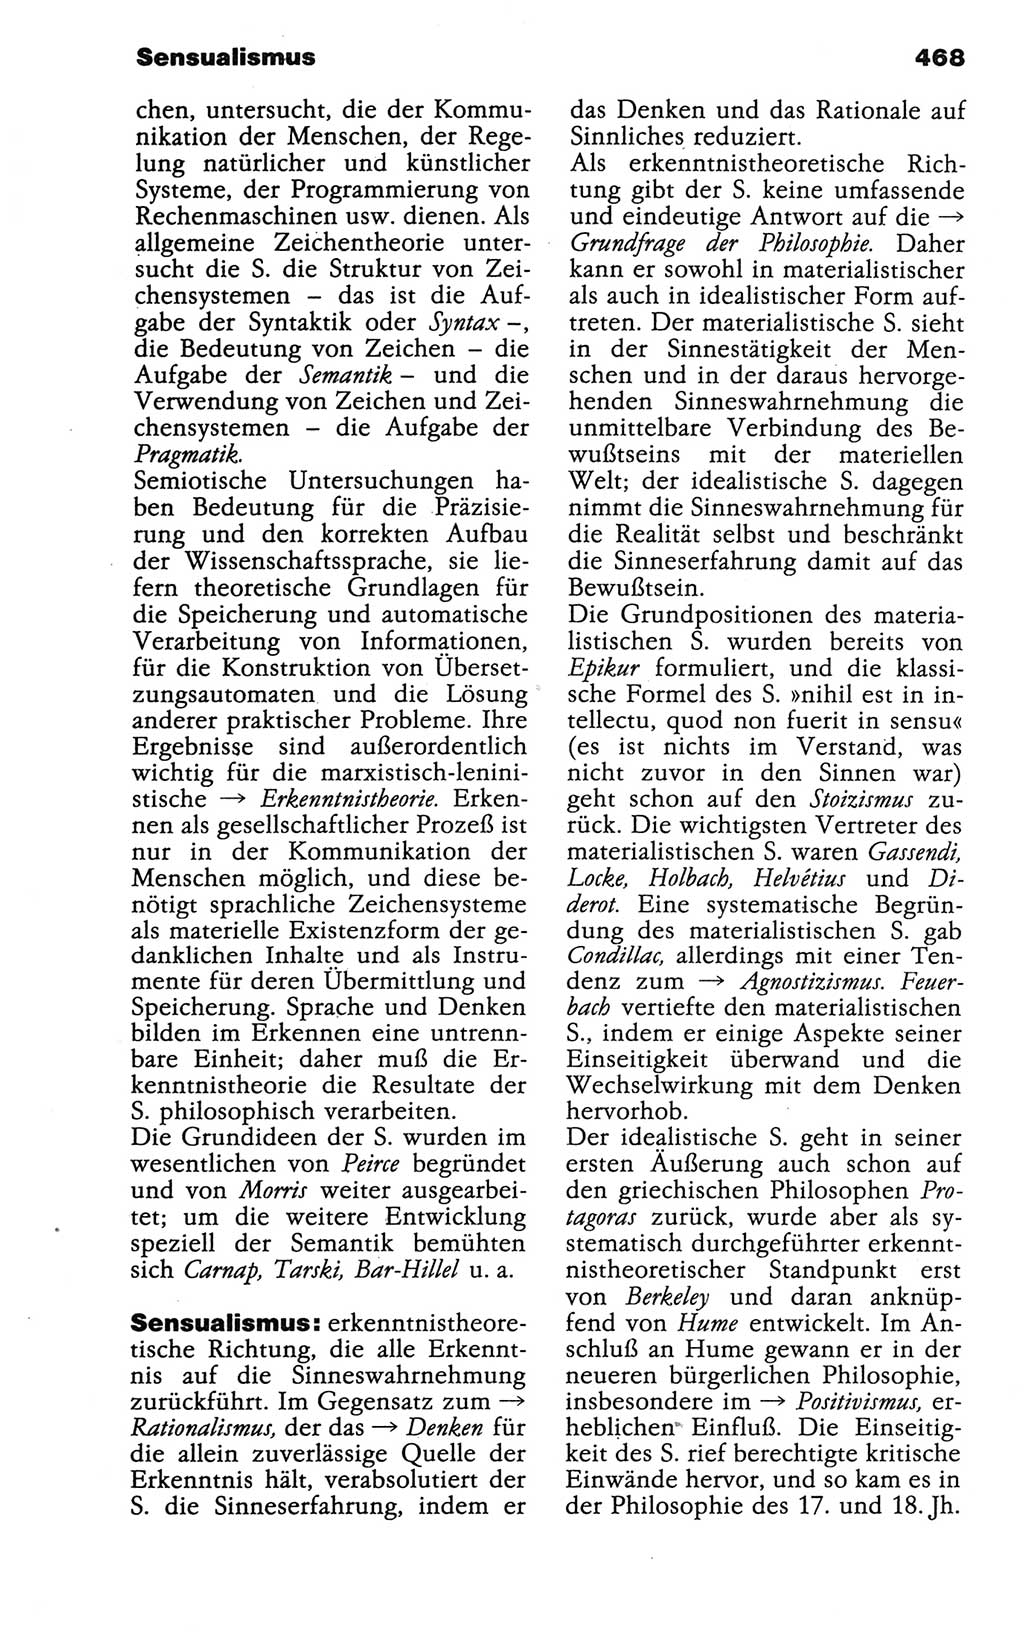 Wörterbuch der marxistisch-leninistischen Philosophie [Deutsche Demokratische Republik (DDR)] 1986, Seite 468 (Wb. ML Phil. DDR 1986, S. 468)